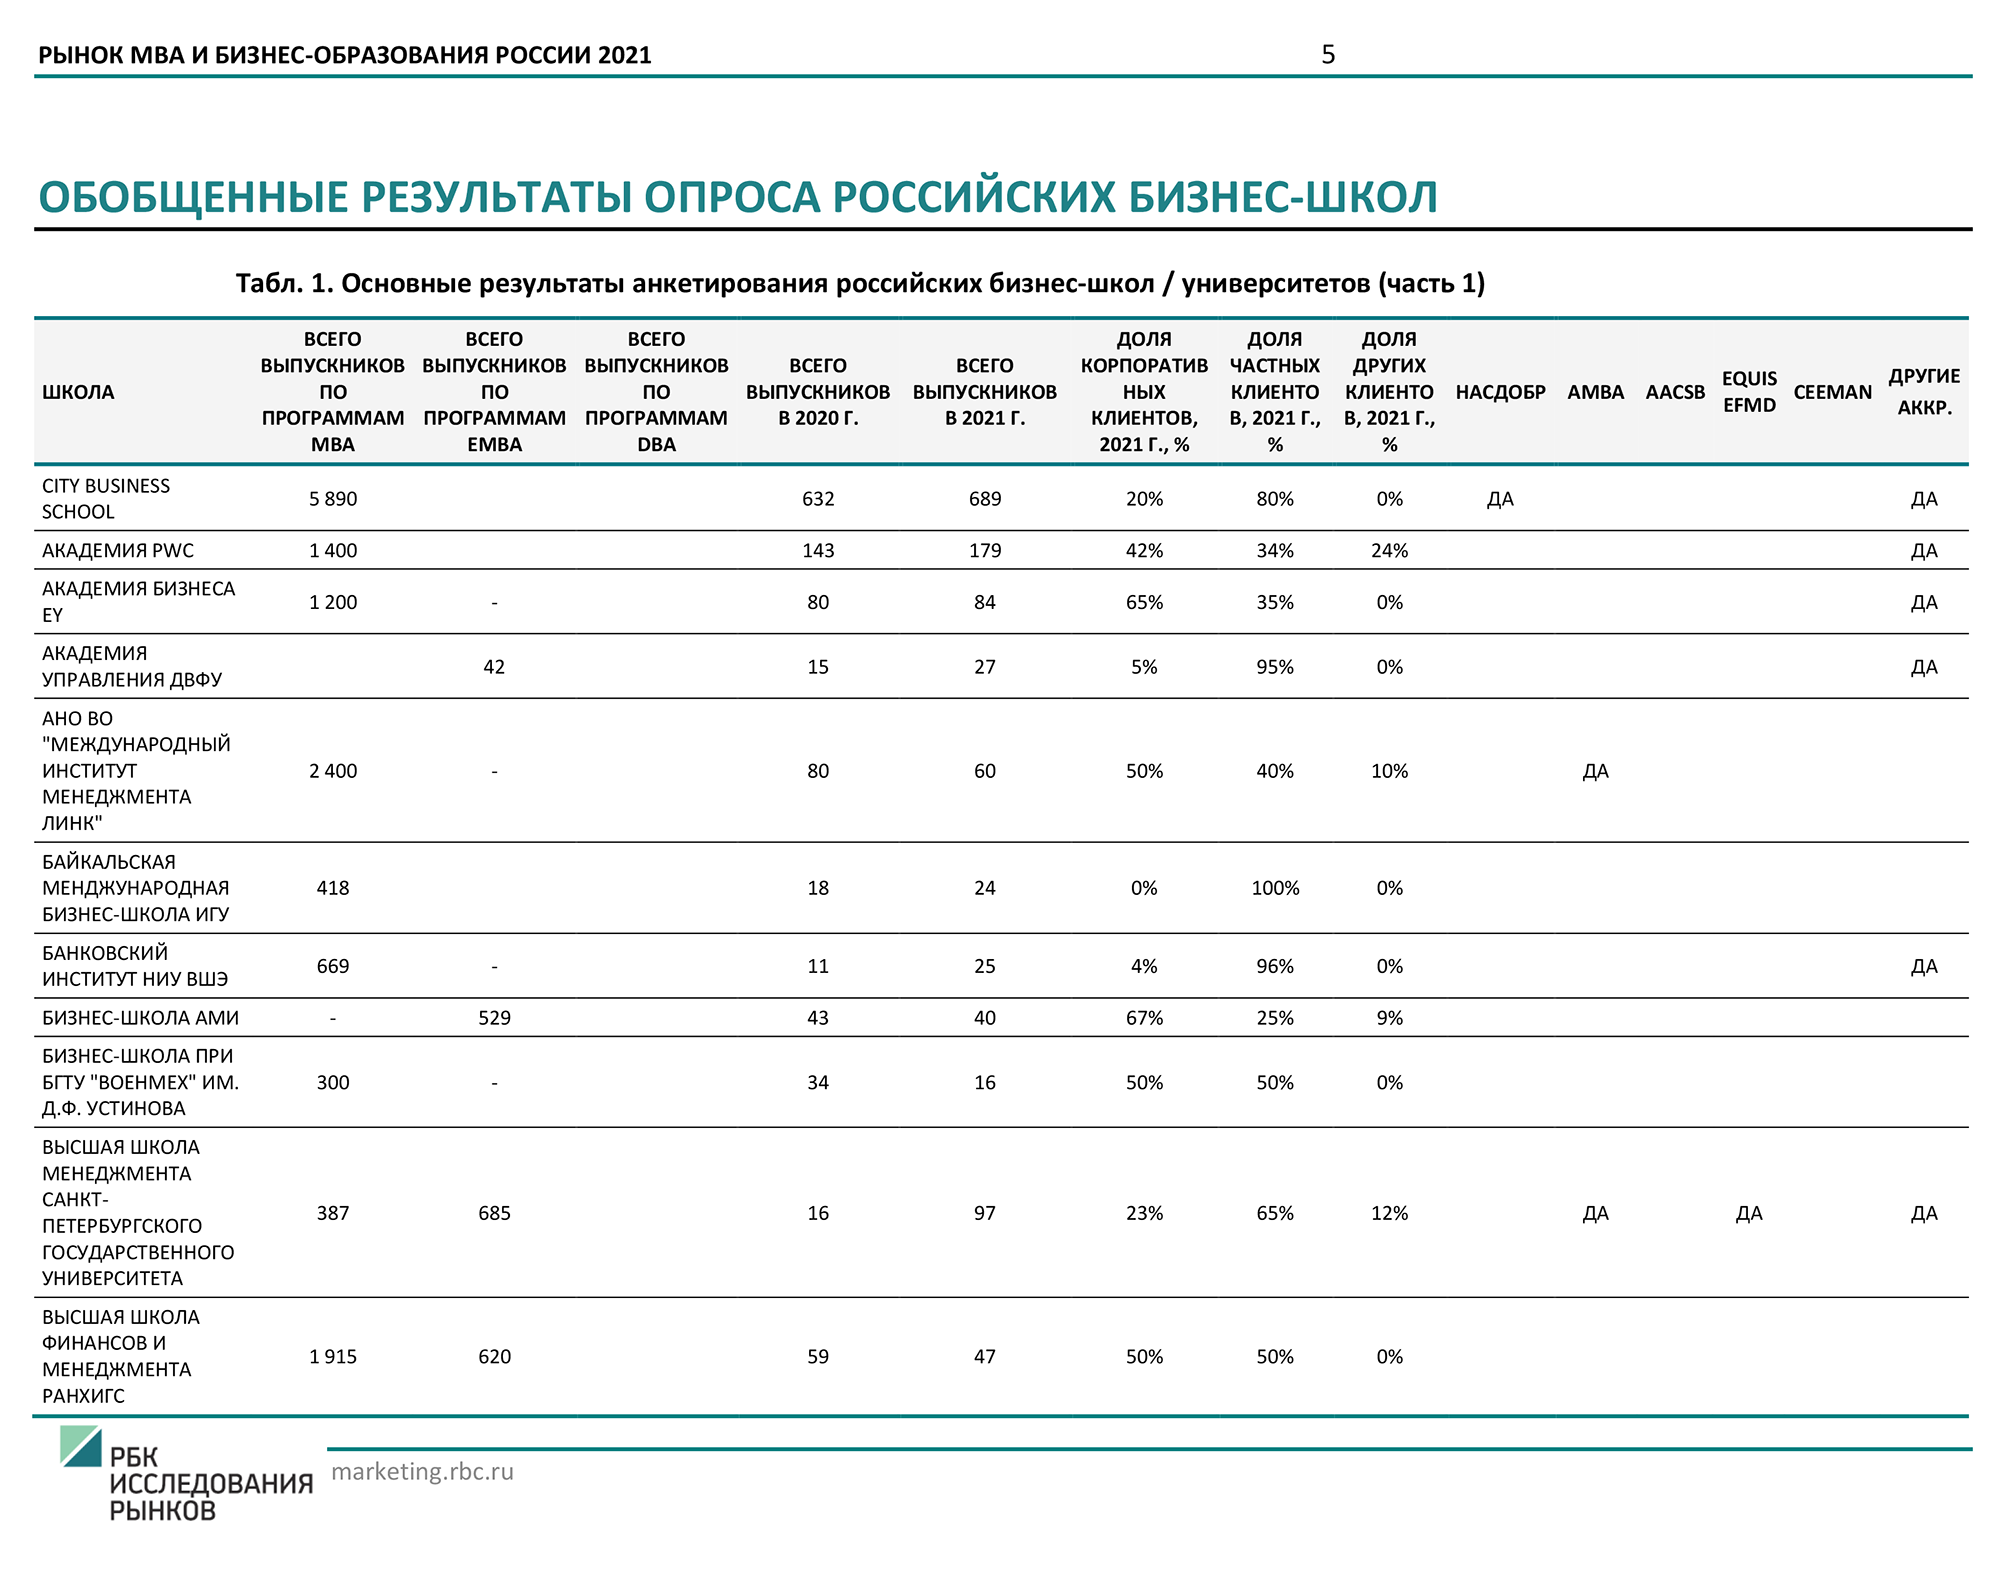 По исследованию РБК удобно сравнивать аккредитации бизнес-школ России и стоимость обучения